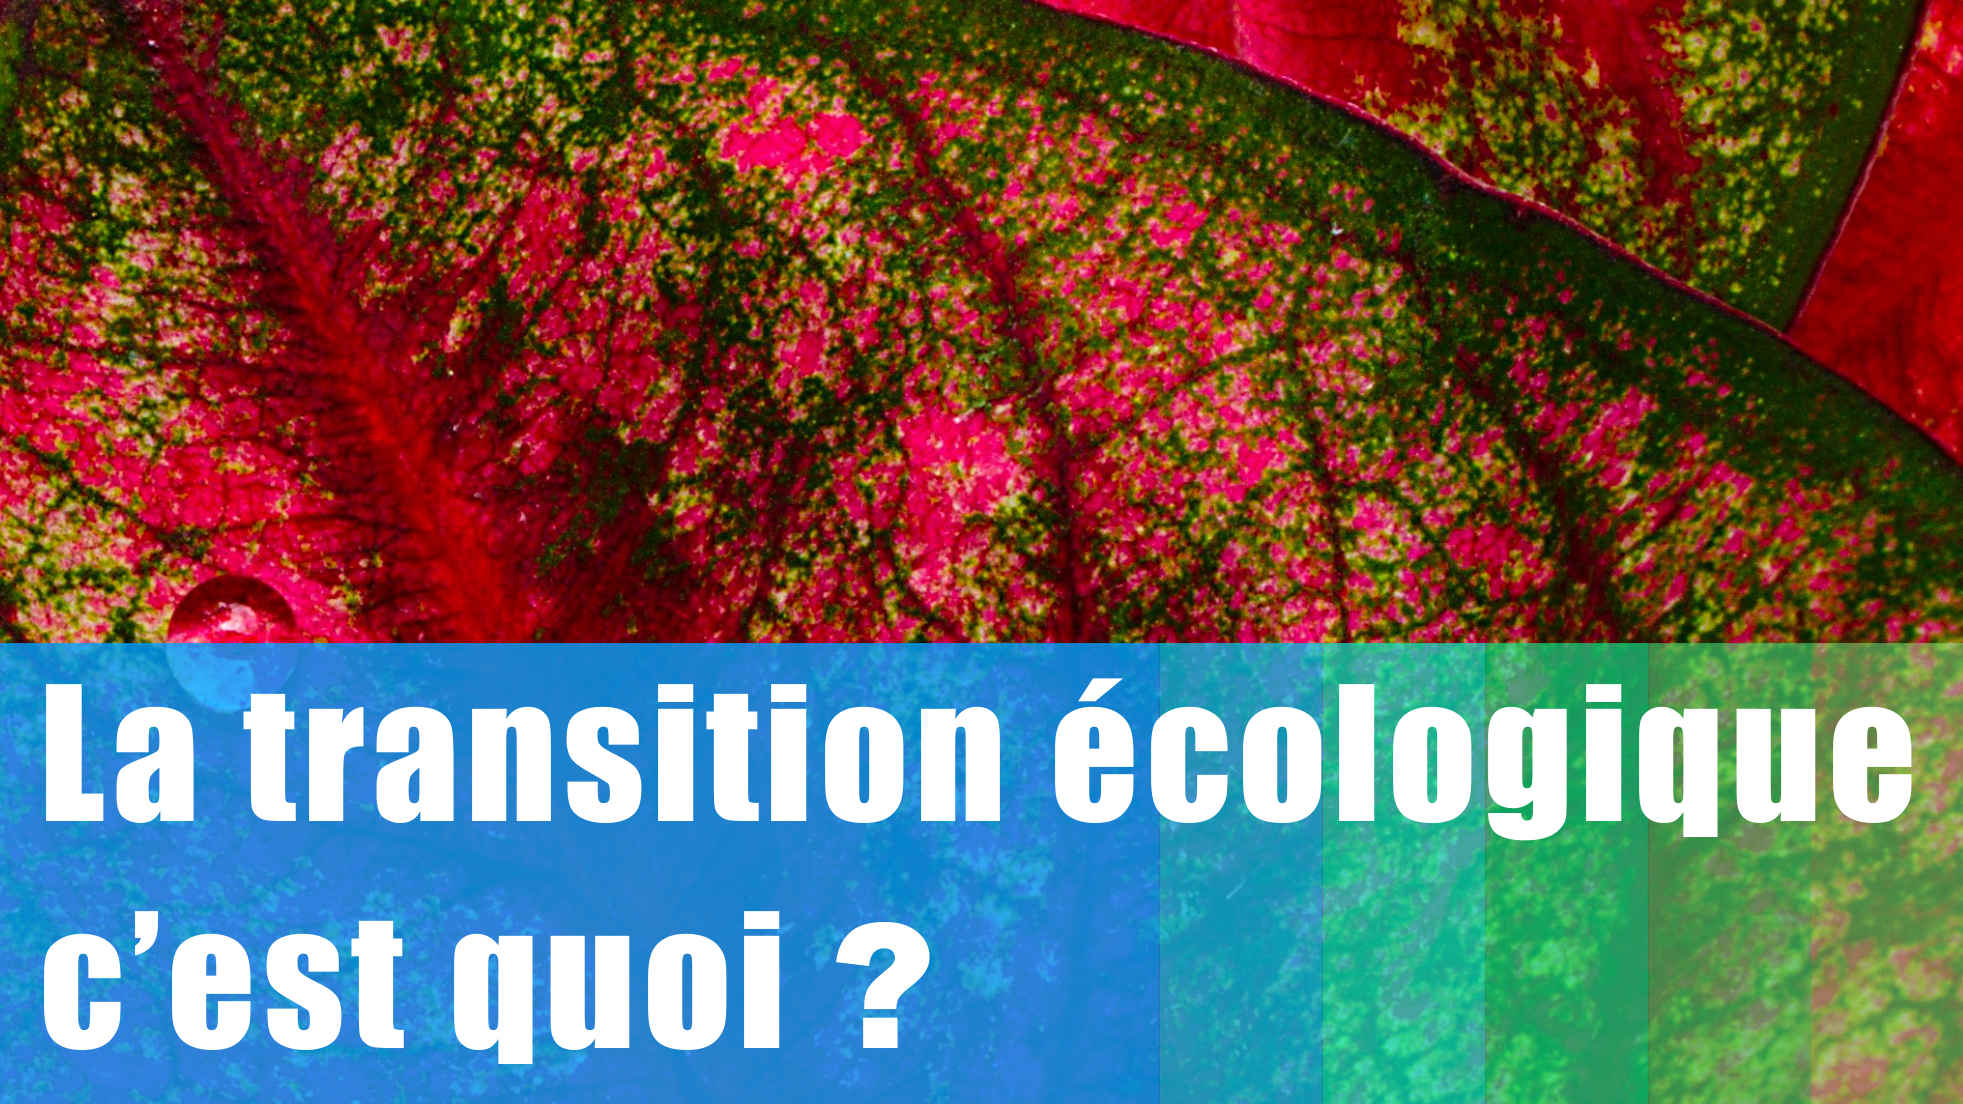 La transition écologique, c’est quoi ?